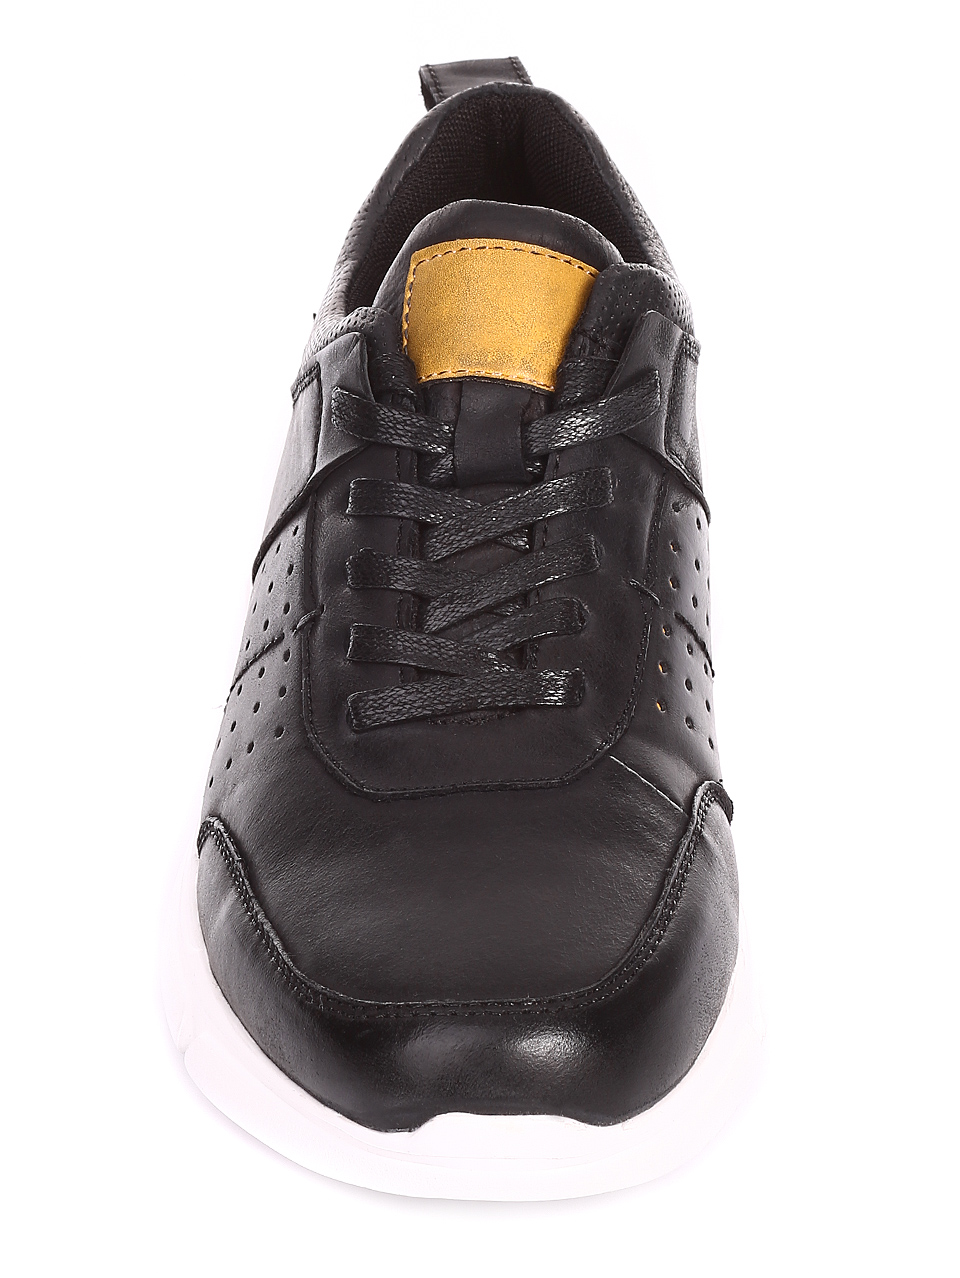 Ежедневни мъжки обувки от естествен набук 7N-20232 black